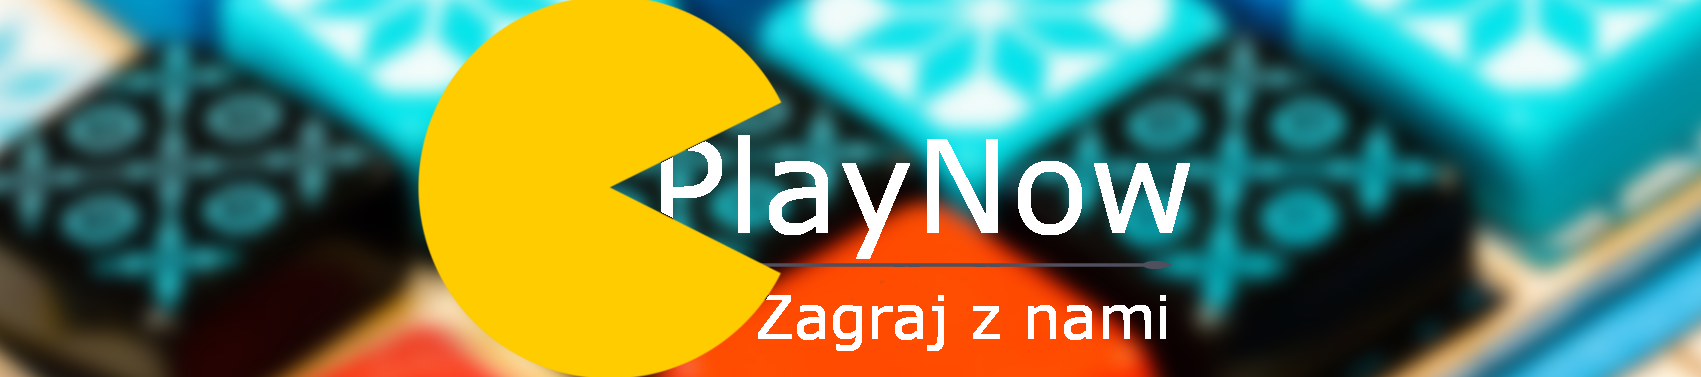 Play Now – zagraj z nami – gry planszowe dla wszystkich